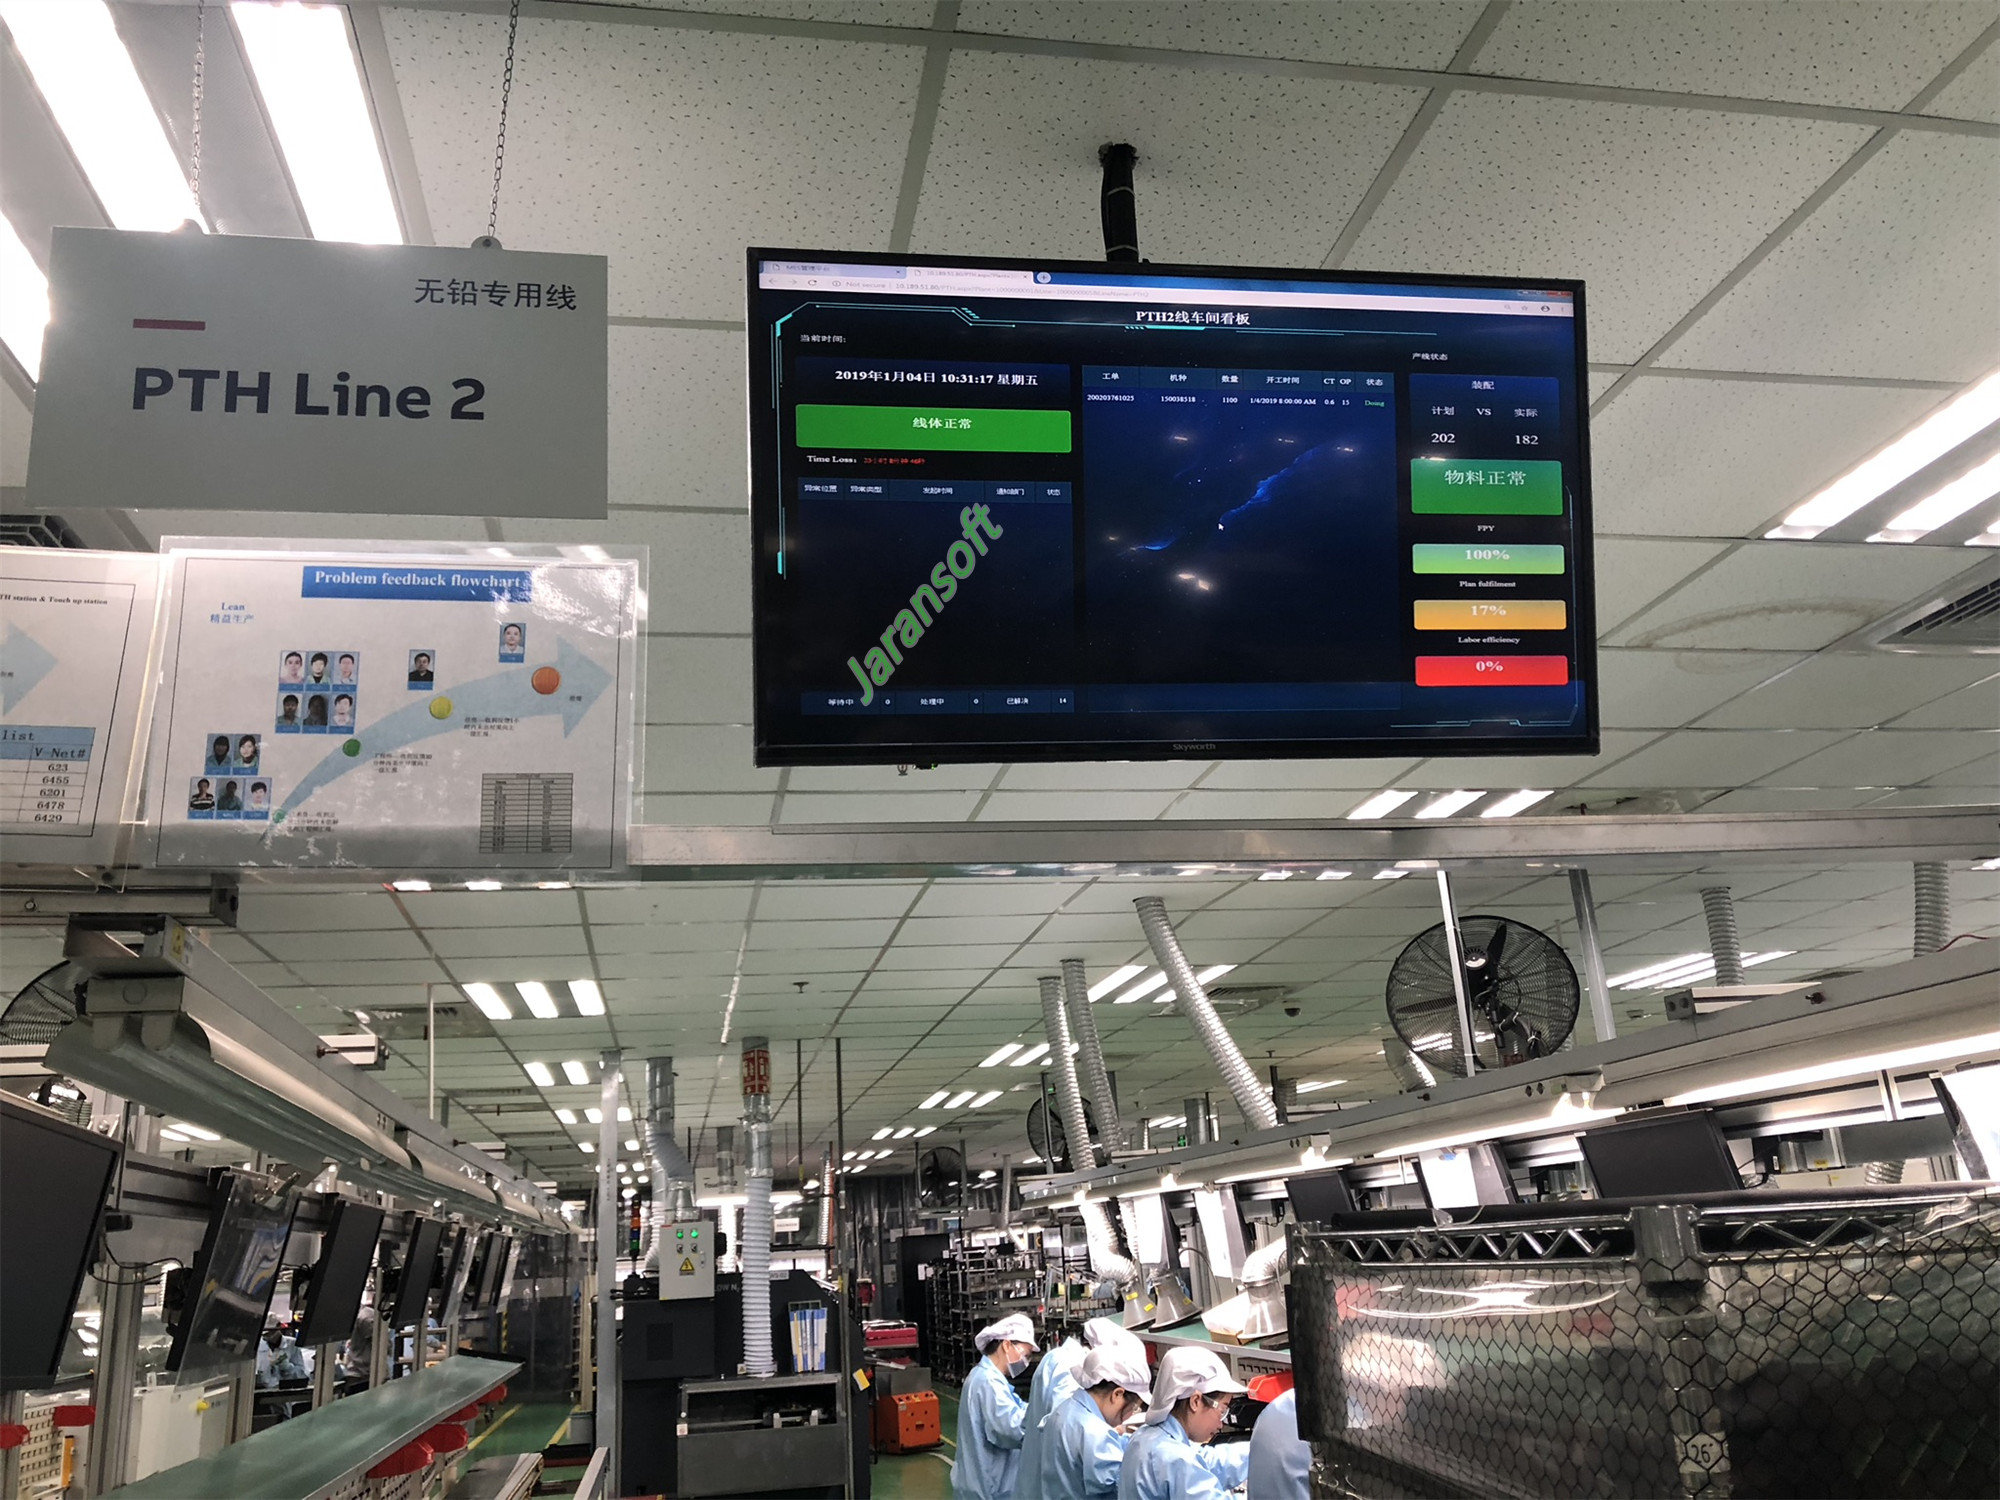 生产排产软件 生产企业erp系统 toc系统厂商上海杰然